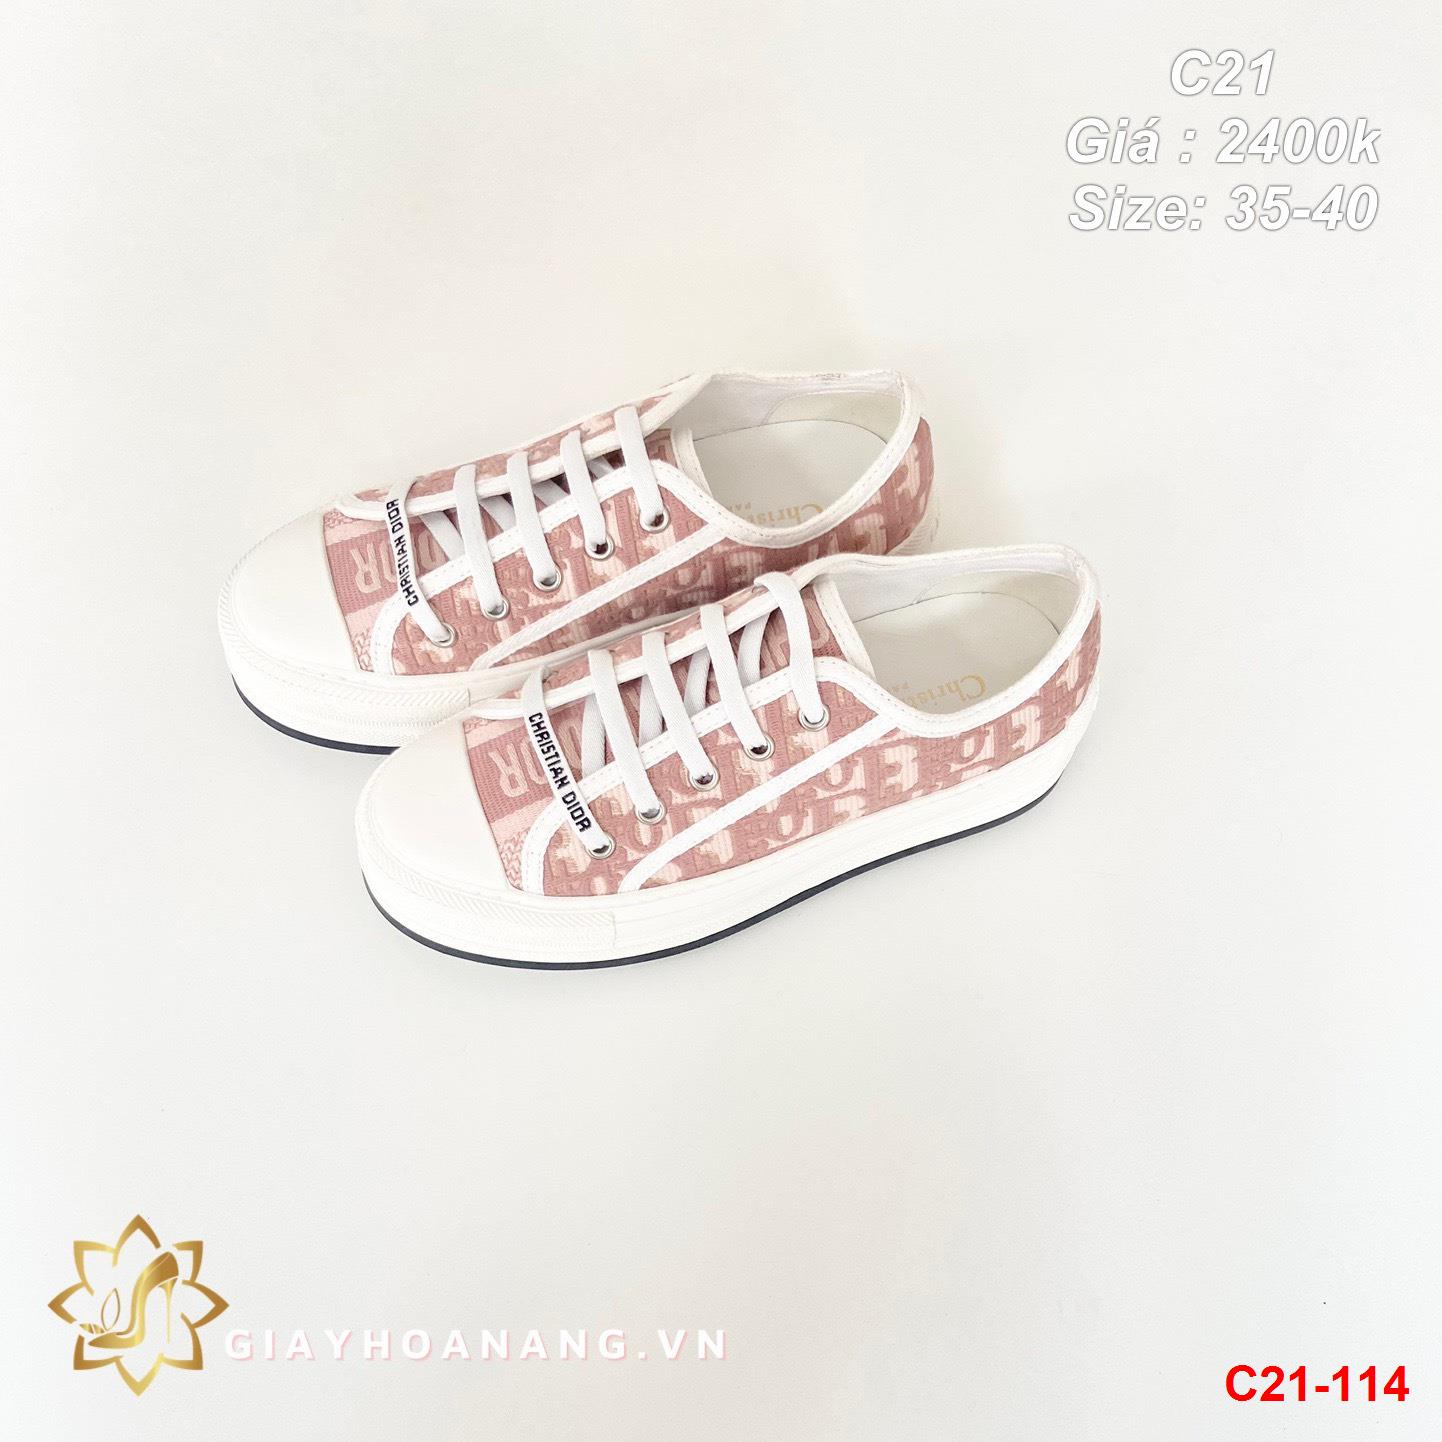 C21-114 Dior giày thể thao siêu cấp